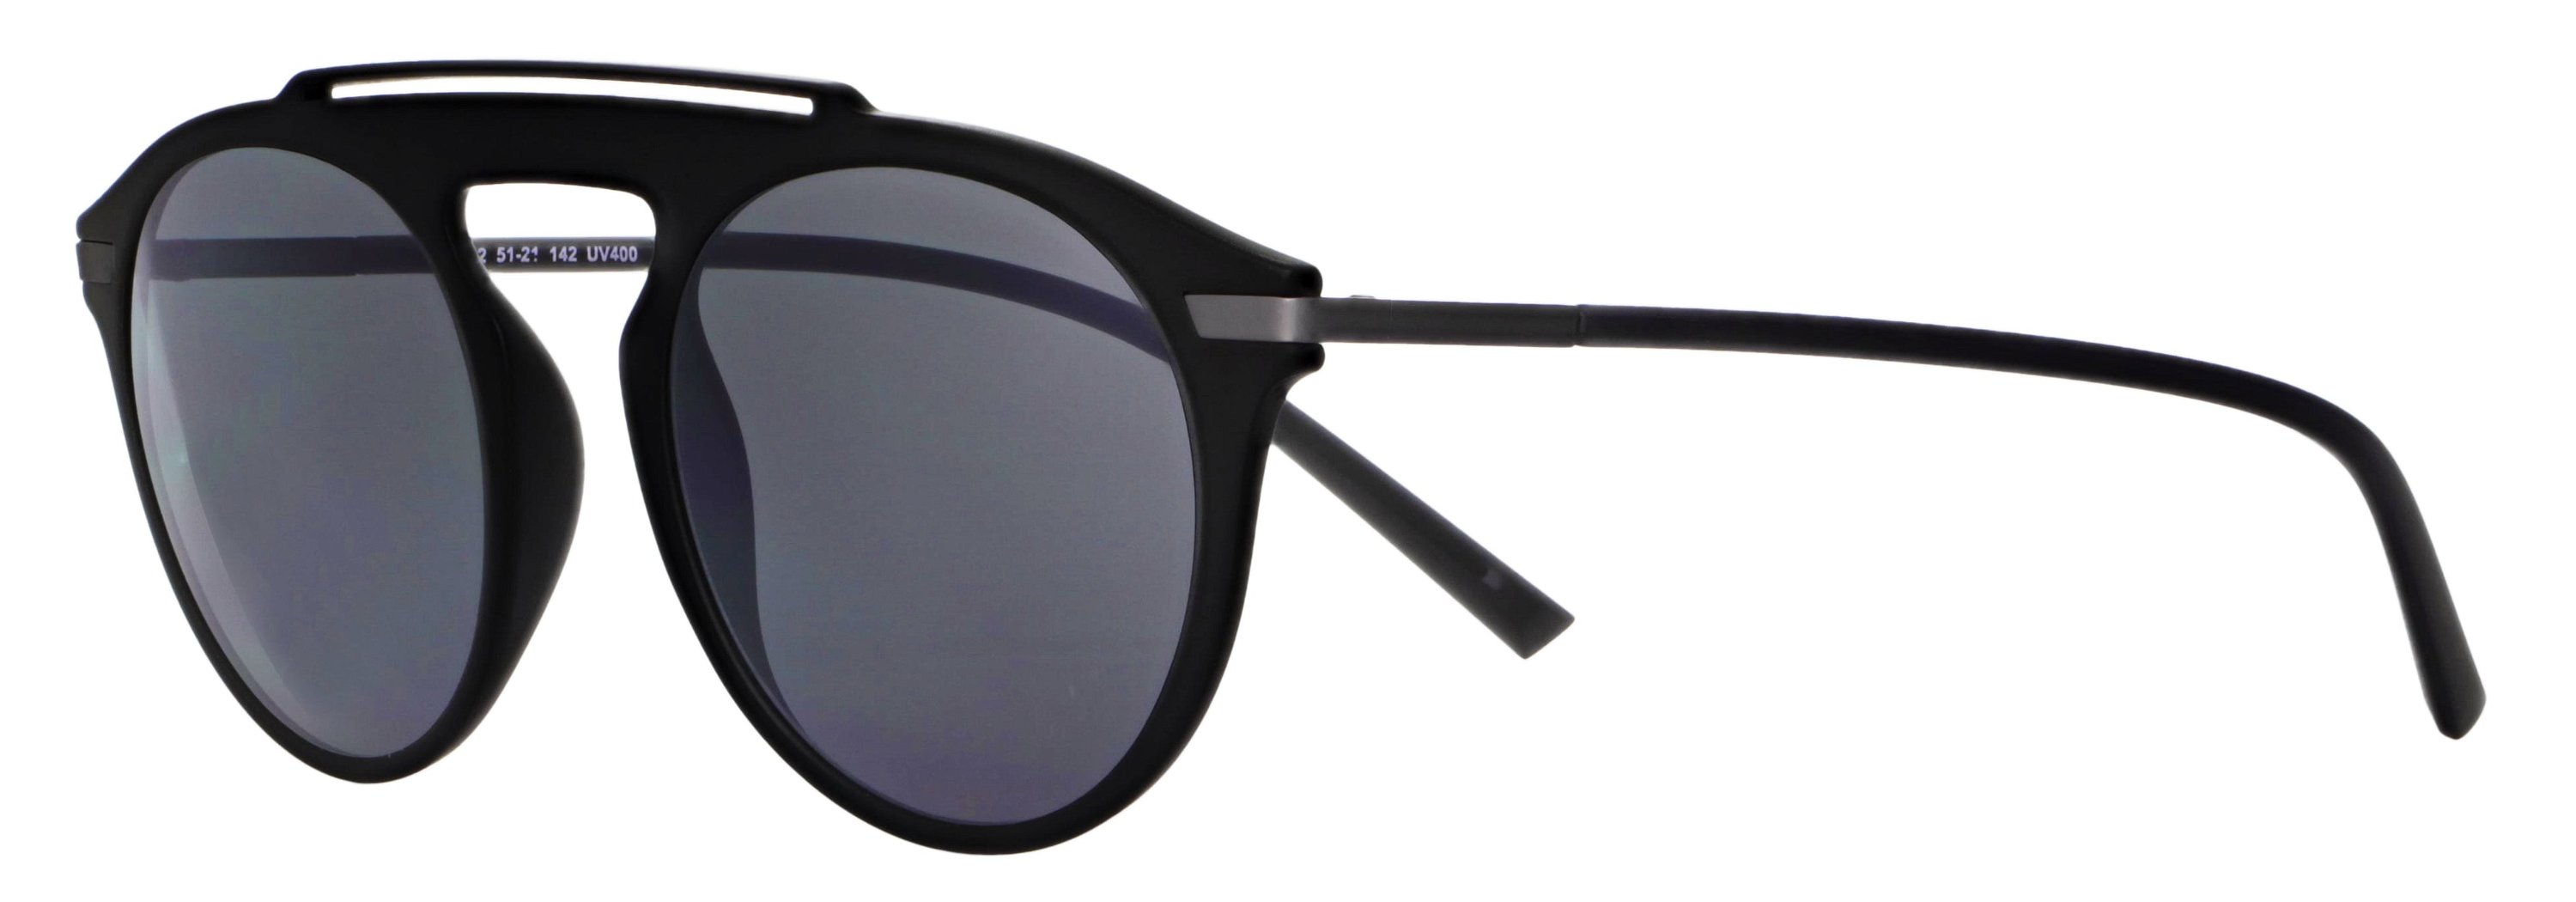 Das Bild zeigt die Sonnenbrille 718022 von der Marke Abele Optik in schwarz matt.